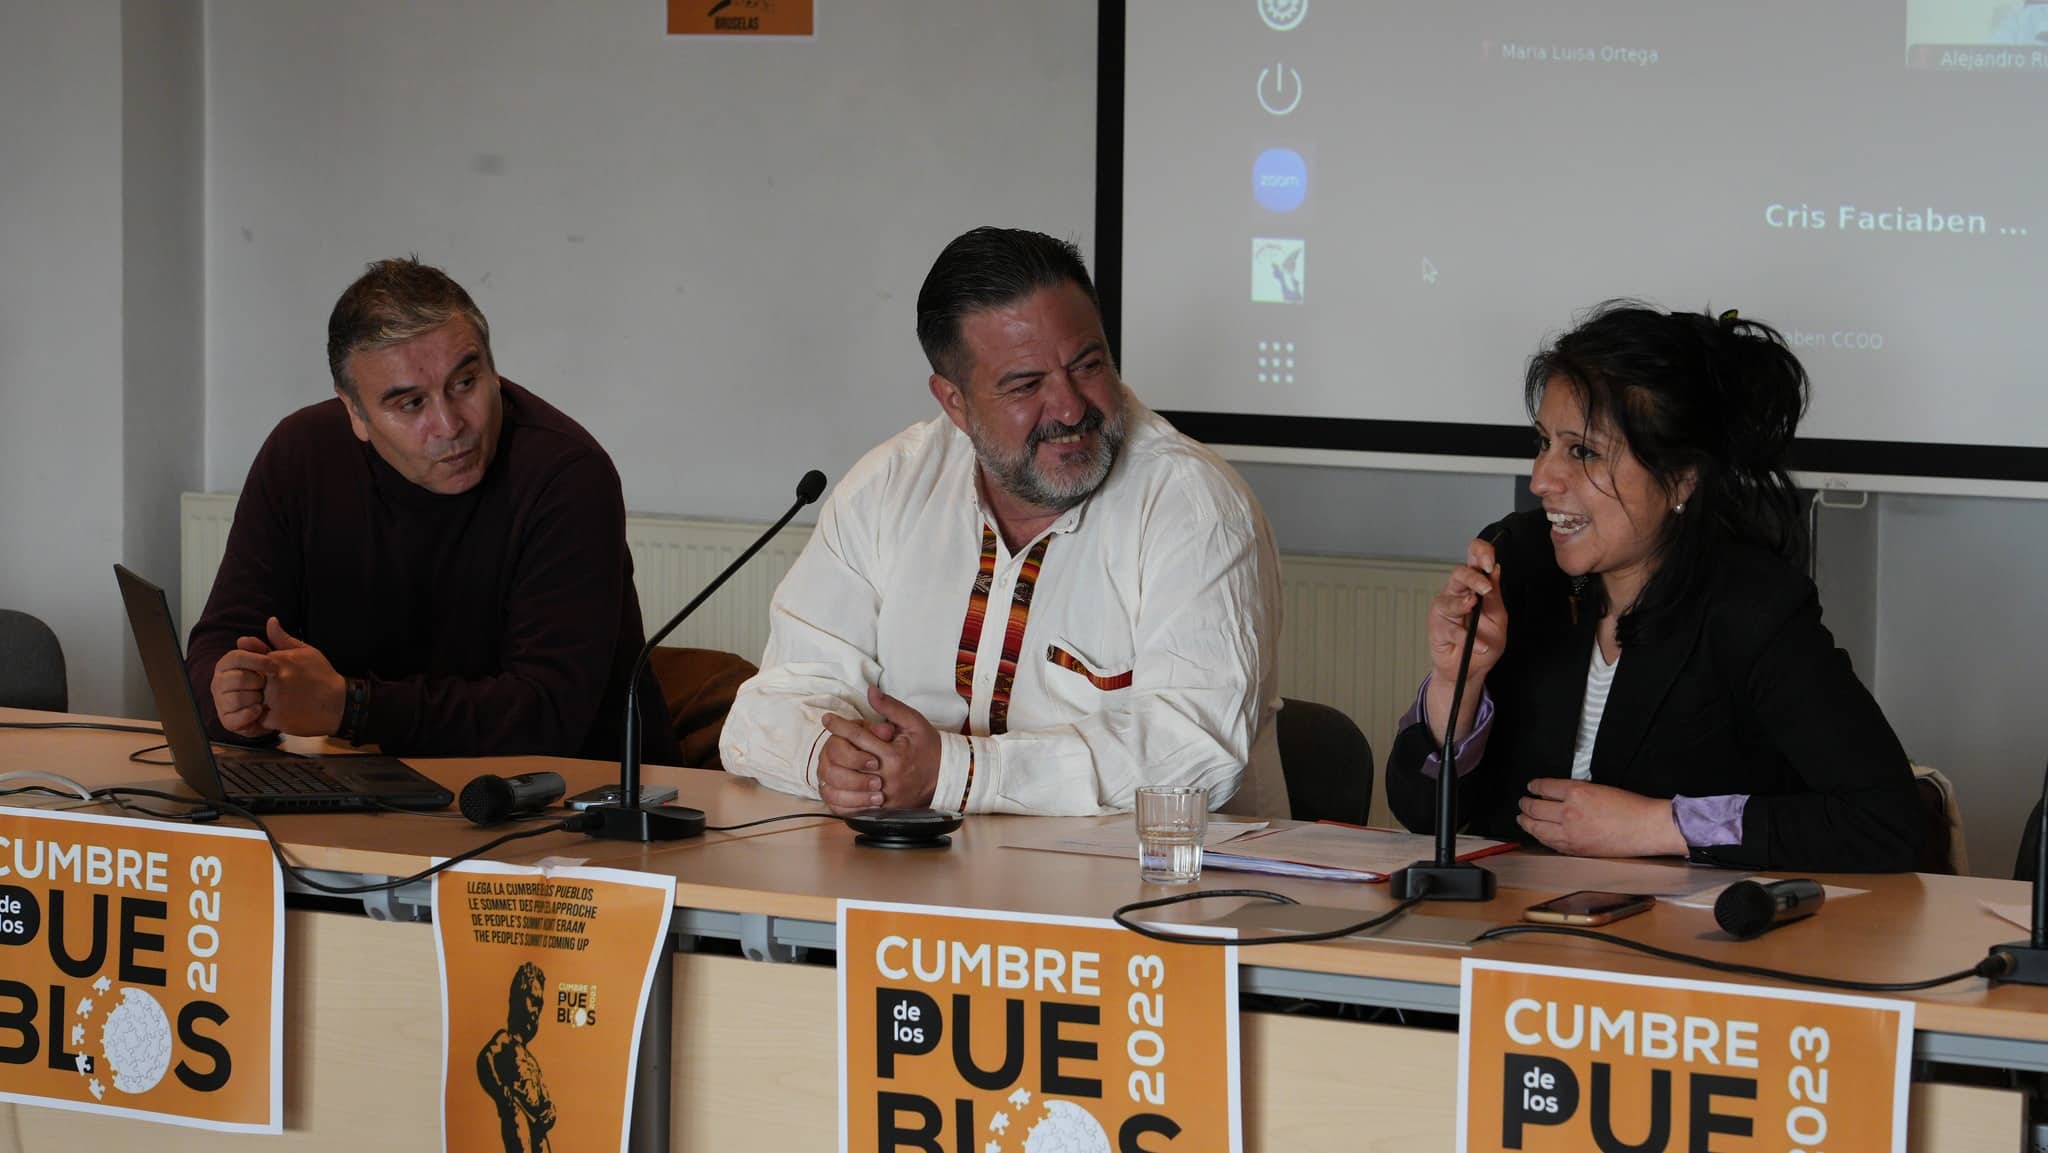 Lancement du « Cumbre de los Pueblos » à Bruxelles : serez-vous de la partie ?